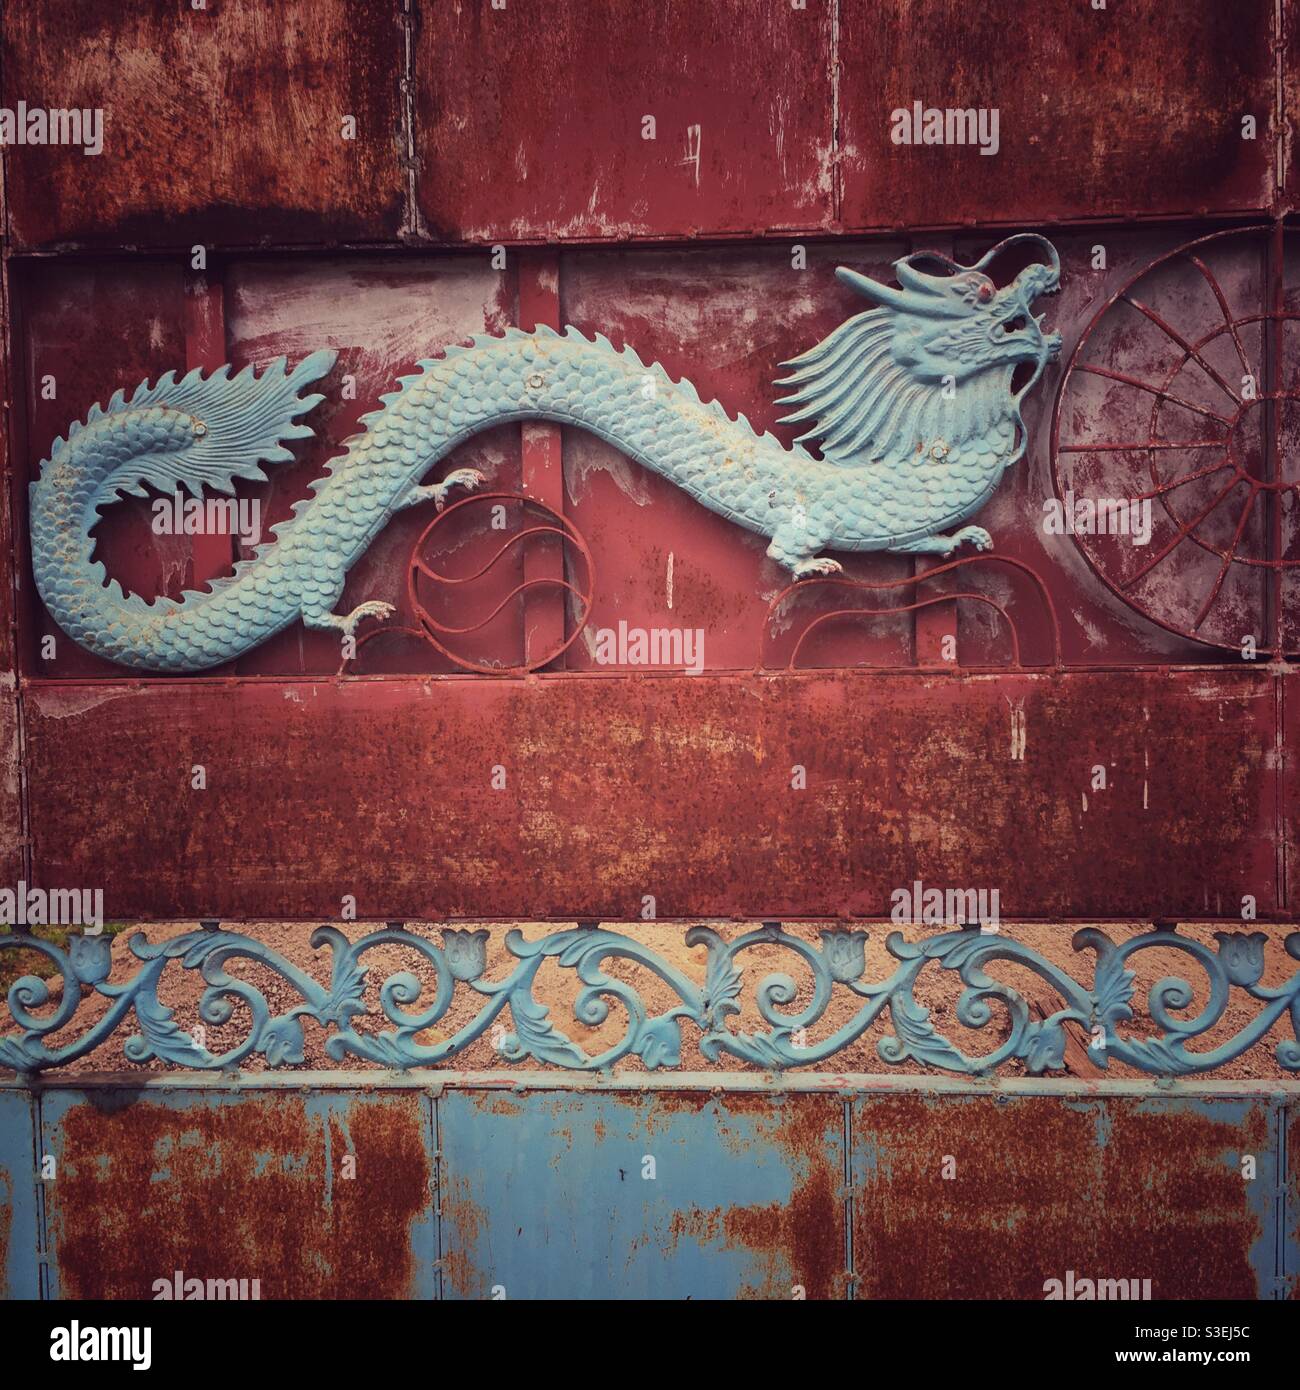 Gatekeeper: Un drago in ferro adorna un cancello, una pratica comune tra le comunità cinesi in Asia. Foto Stock